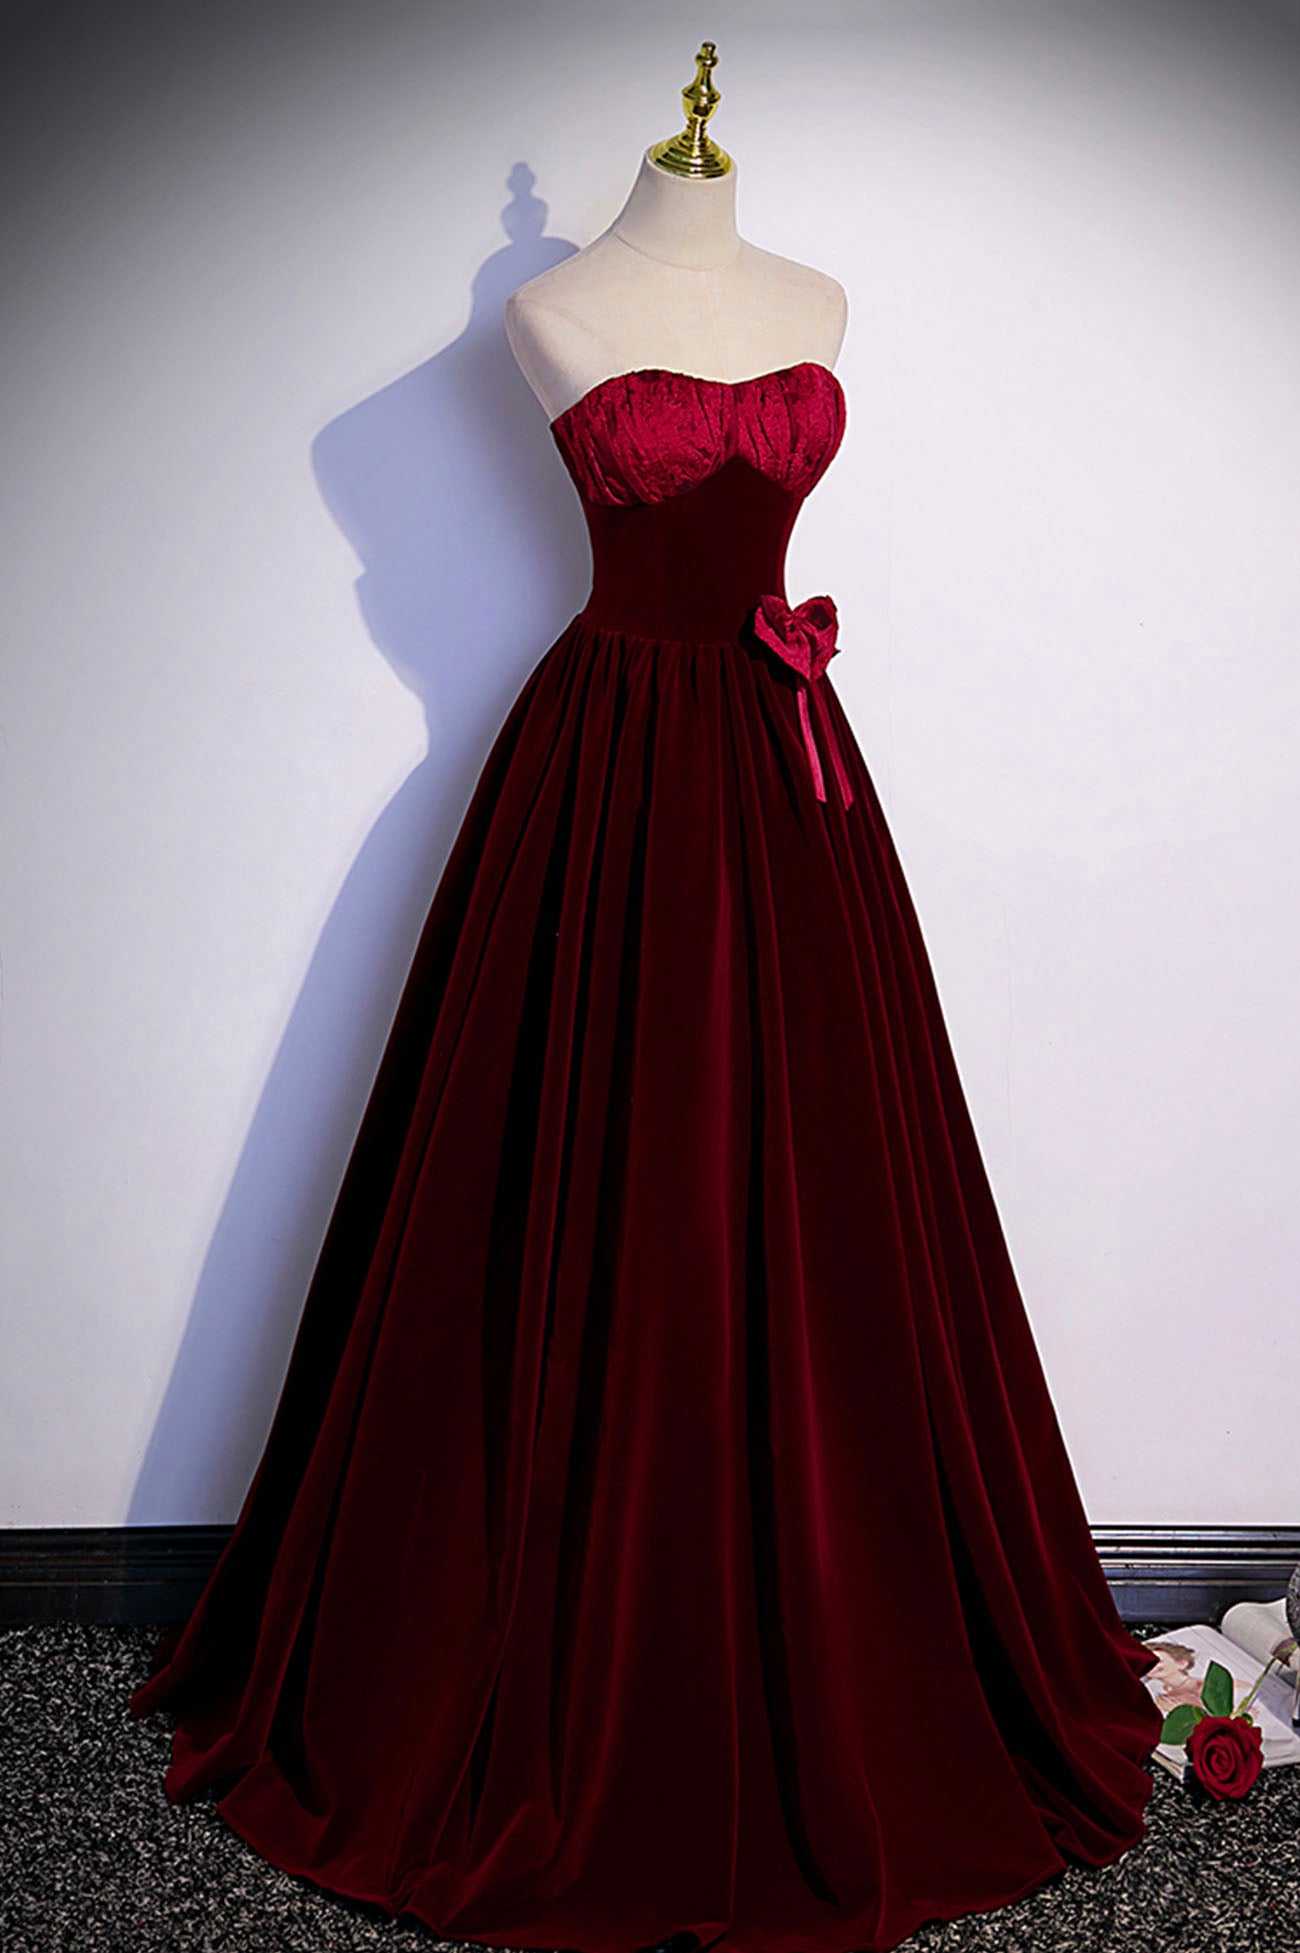 Burgundy velvet long prom dress A-line evening gown s86